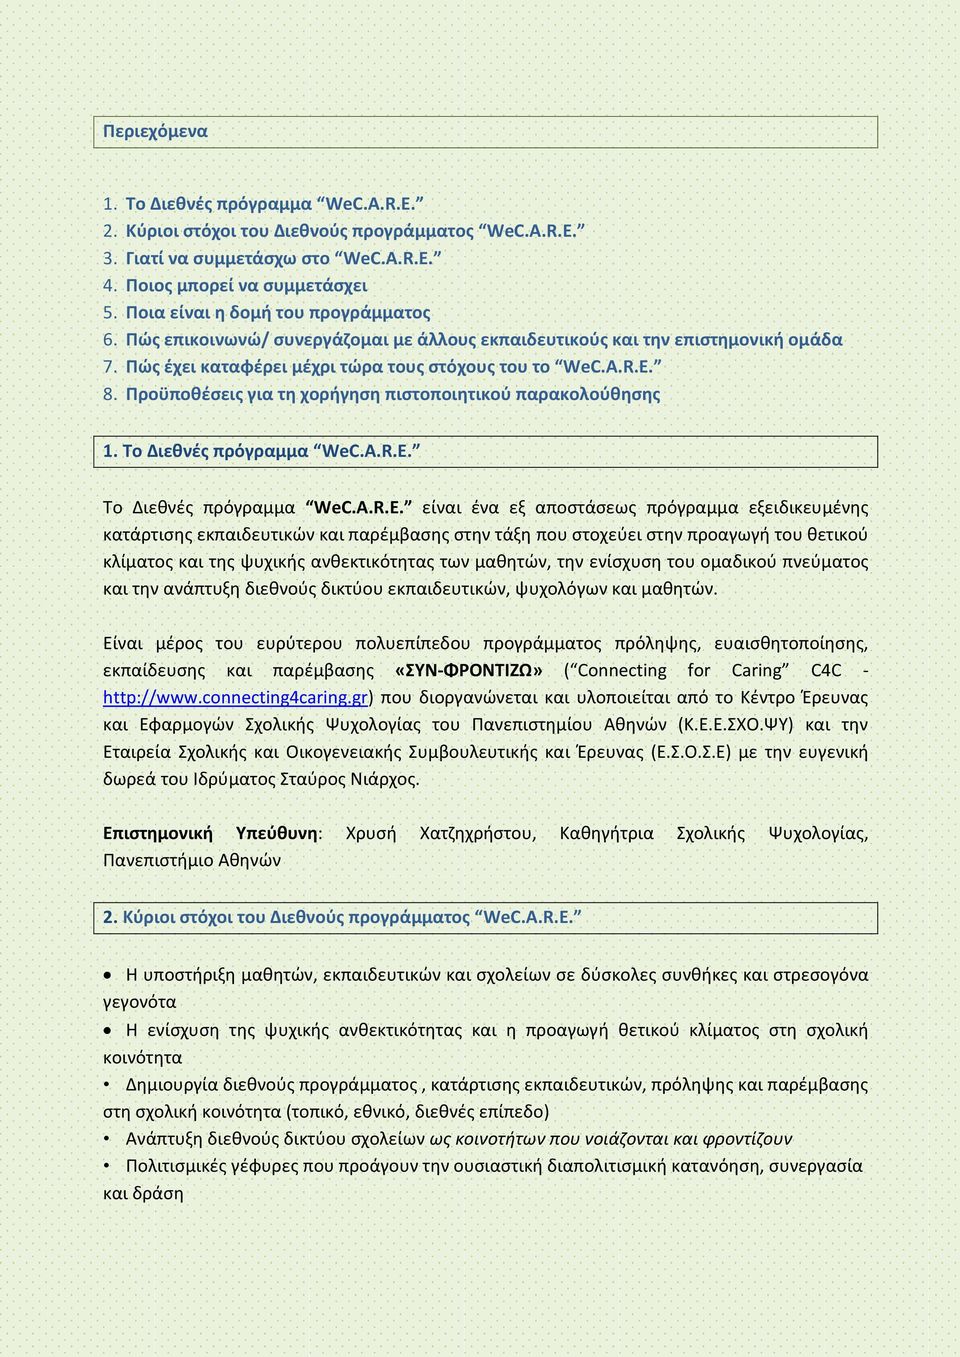 Προϋποθέσεις για τη χορήγηση πιστοποιητικού παρακολούθησης 1. Το Διεθνές πρόγραμμα WeC.A.R.E.